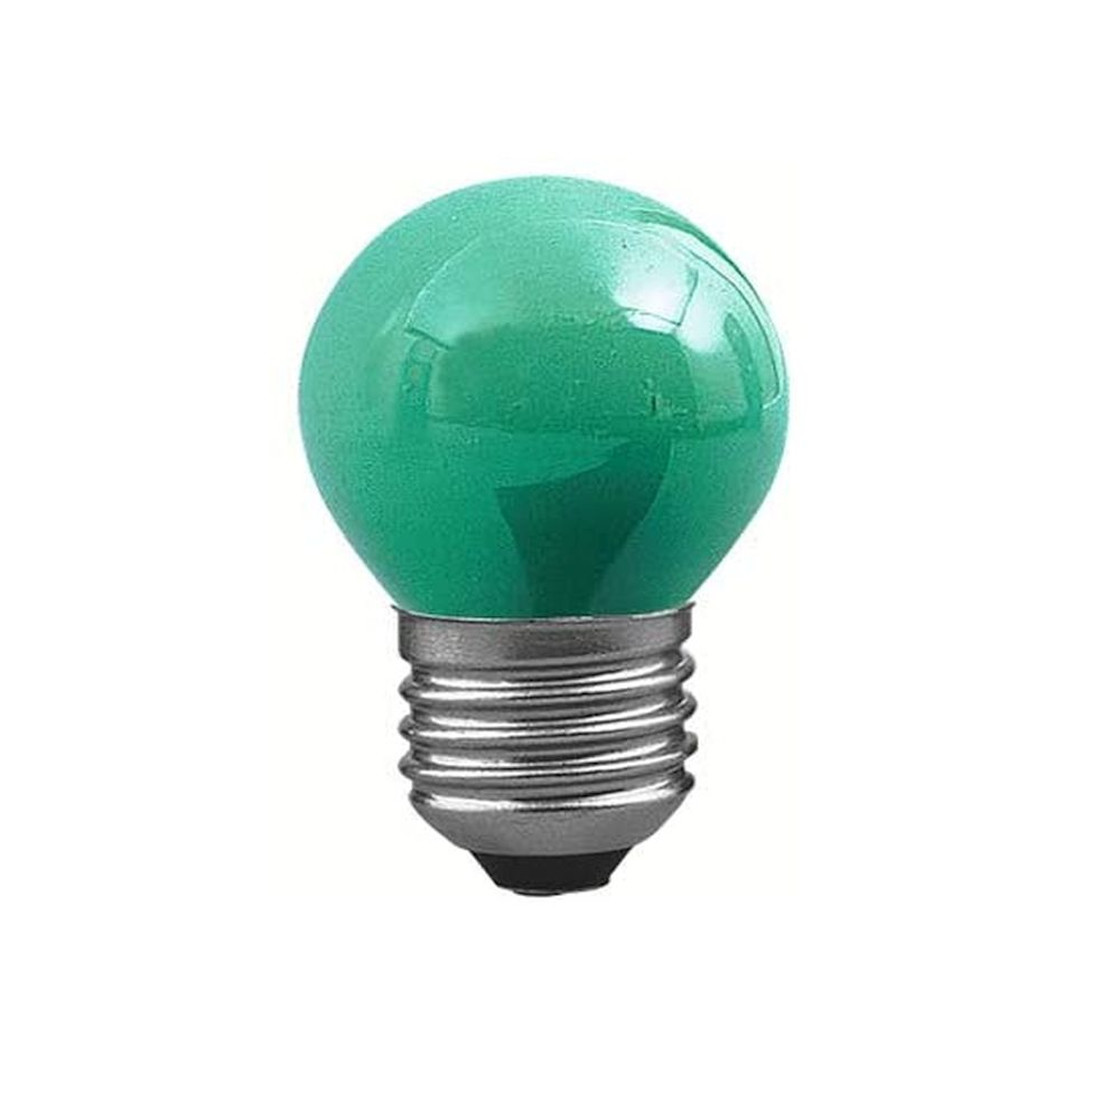 https://www.lampen-rampe.de/media/image/product/71978/lg/paulmann-40133-deko-gluehlampe-tropfen-gruen-25w-e27-party-color-licht-230v-40133.jpg